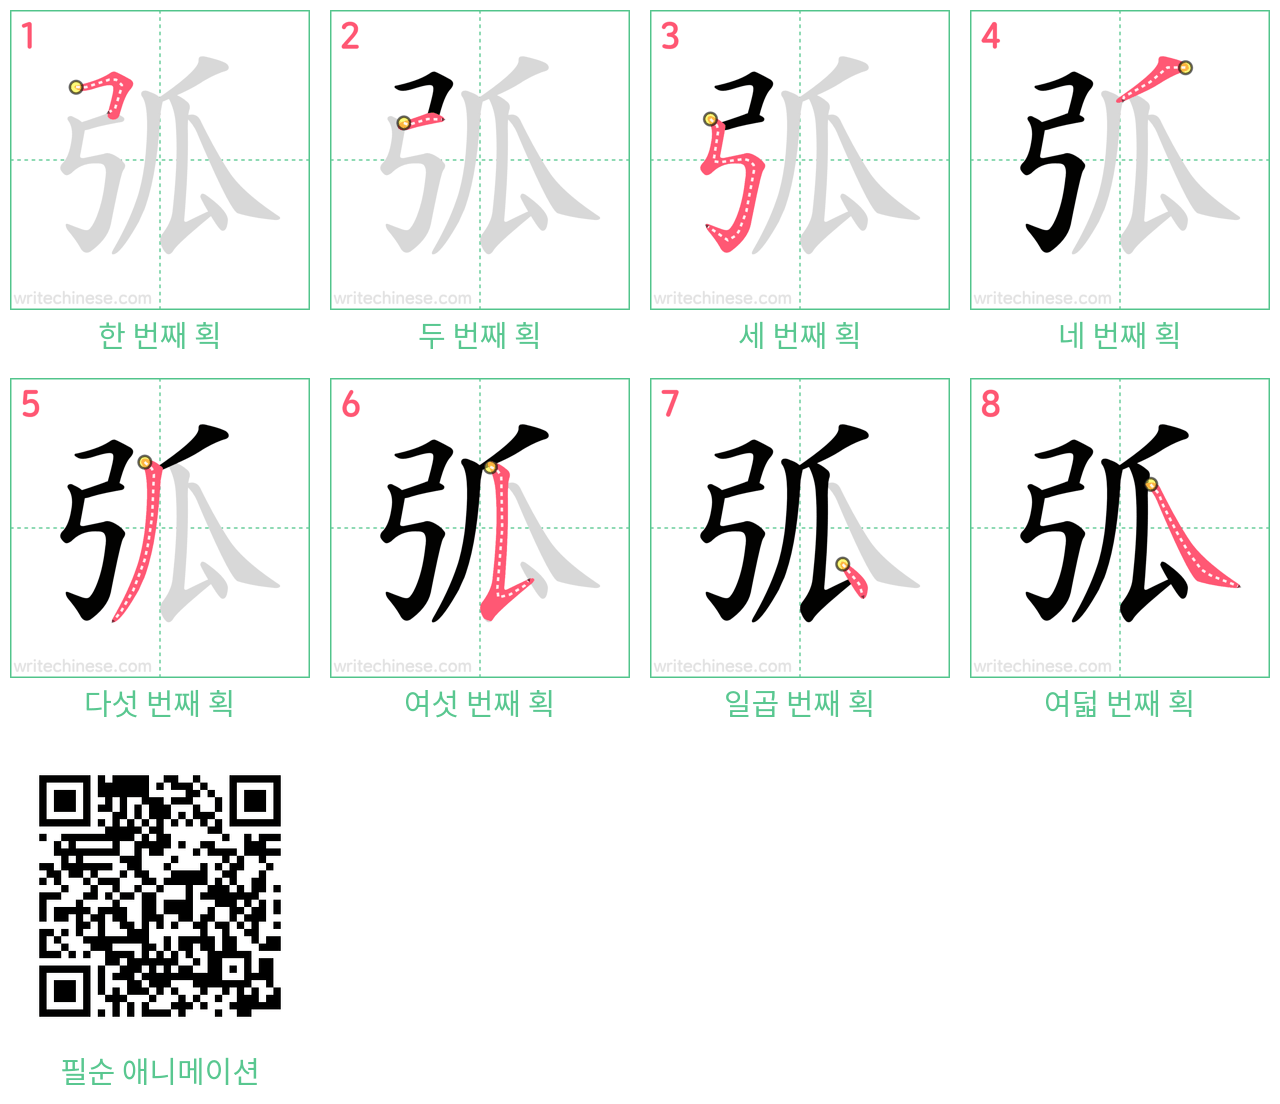 弧 step-by-step stroke order diagrams